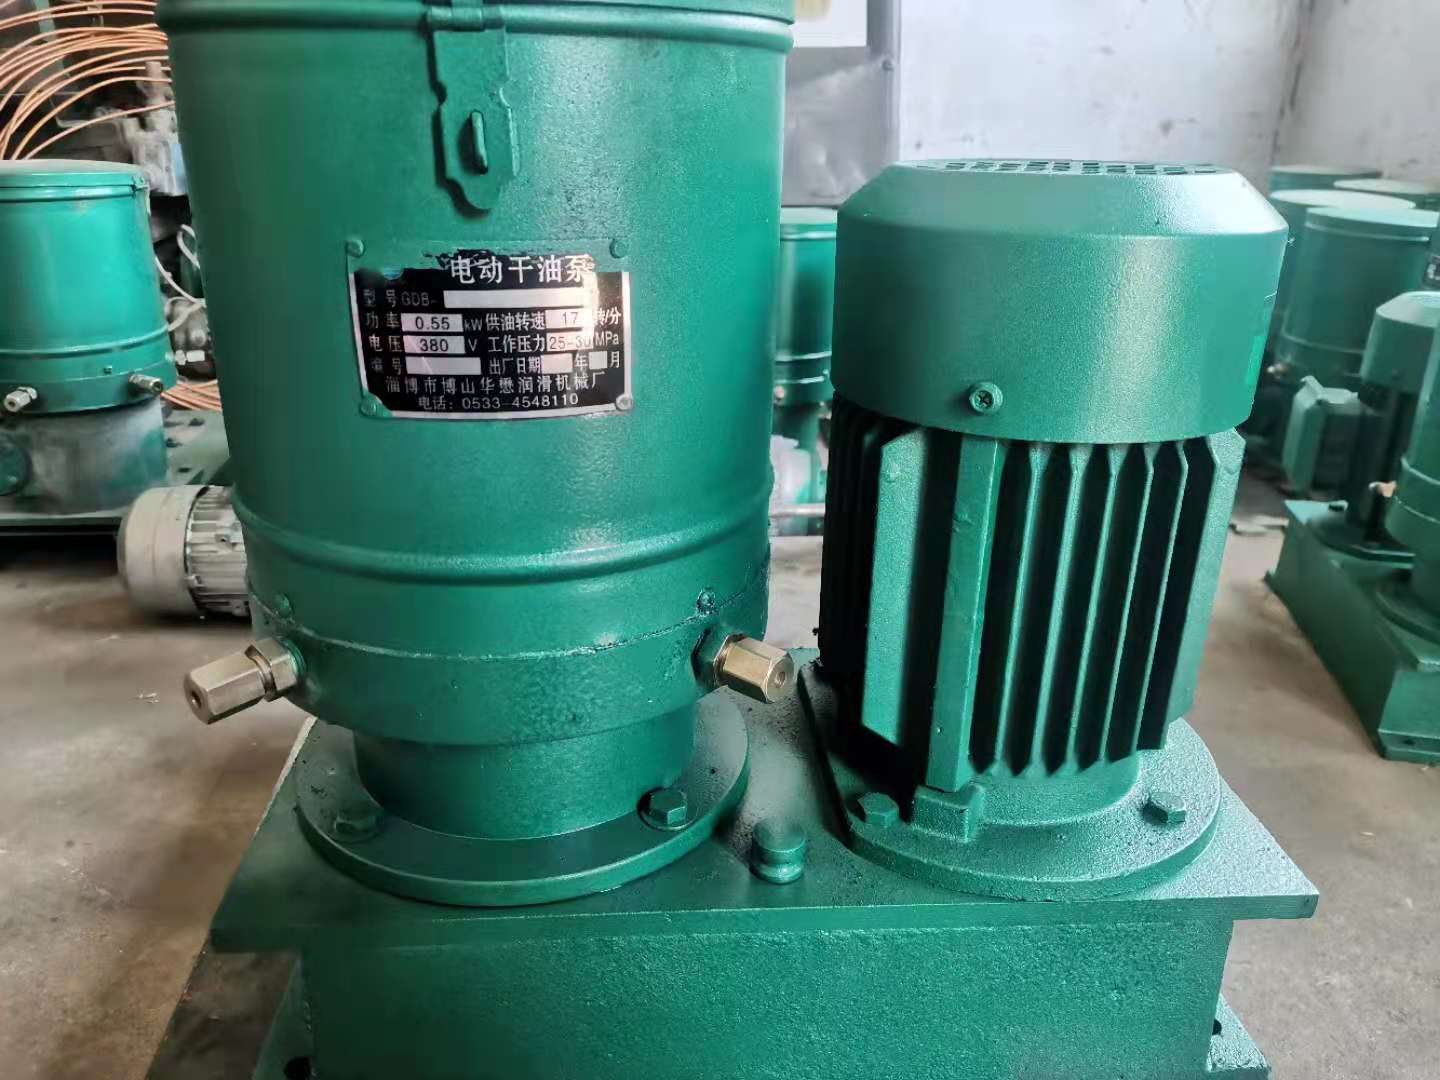 油泵 柱塞泵等各类润滑设备 华懋润滑GDB-1-20 润滑泵 我厂专业生产电动干油泵2